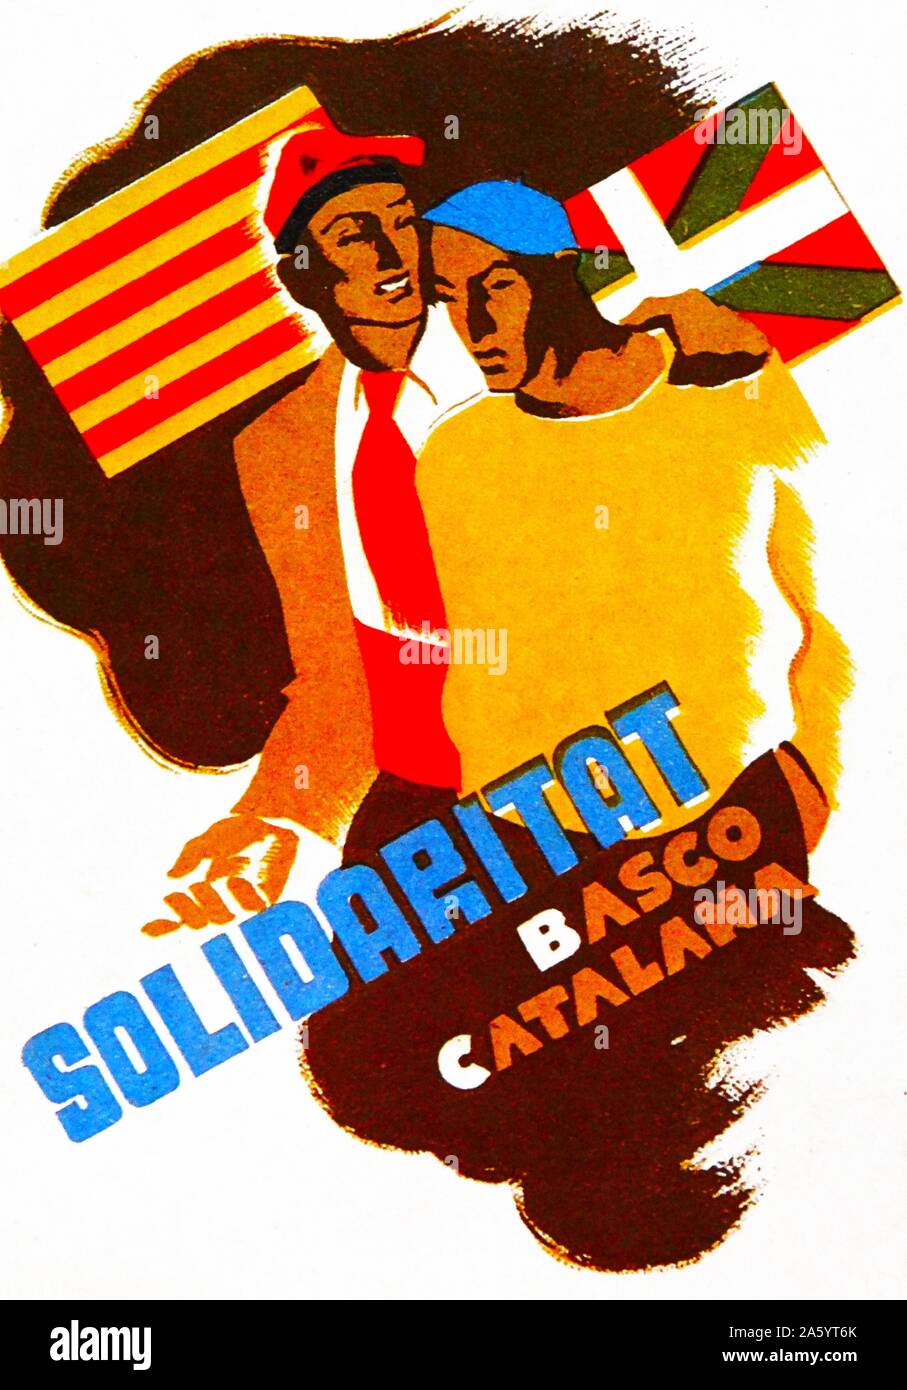 L'affiche de propagande illustrant la solidarité catalan basque pendant la guerre civile espagnole Banque D'Images